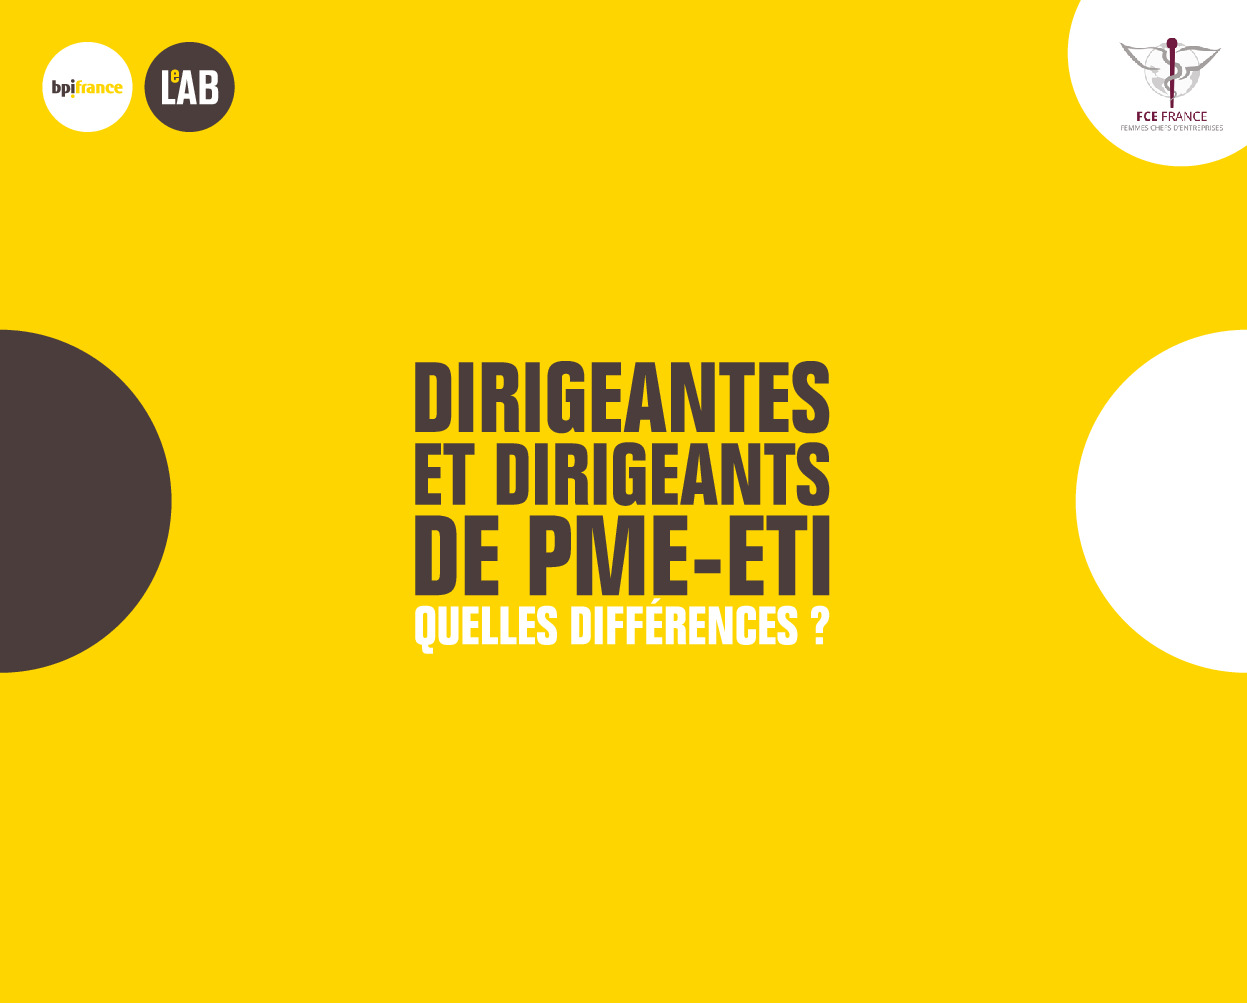 Bpifrance Le Lab_Dirigeantes et dirigeants de PME-ETI – 01dec2022.pdf